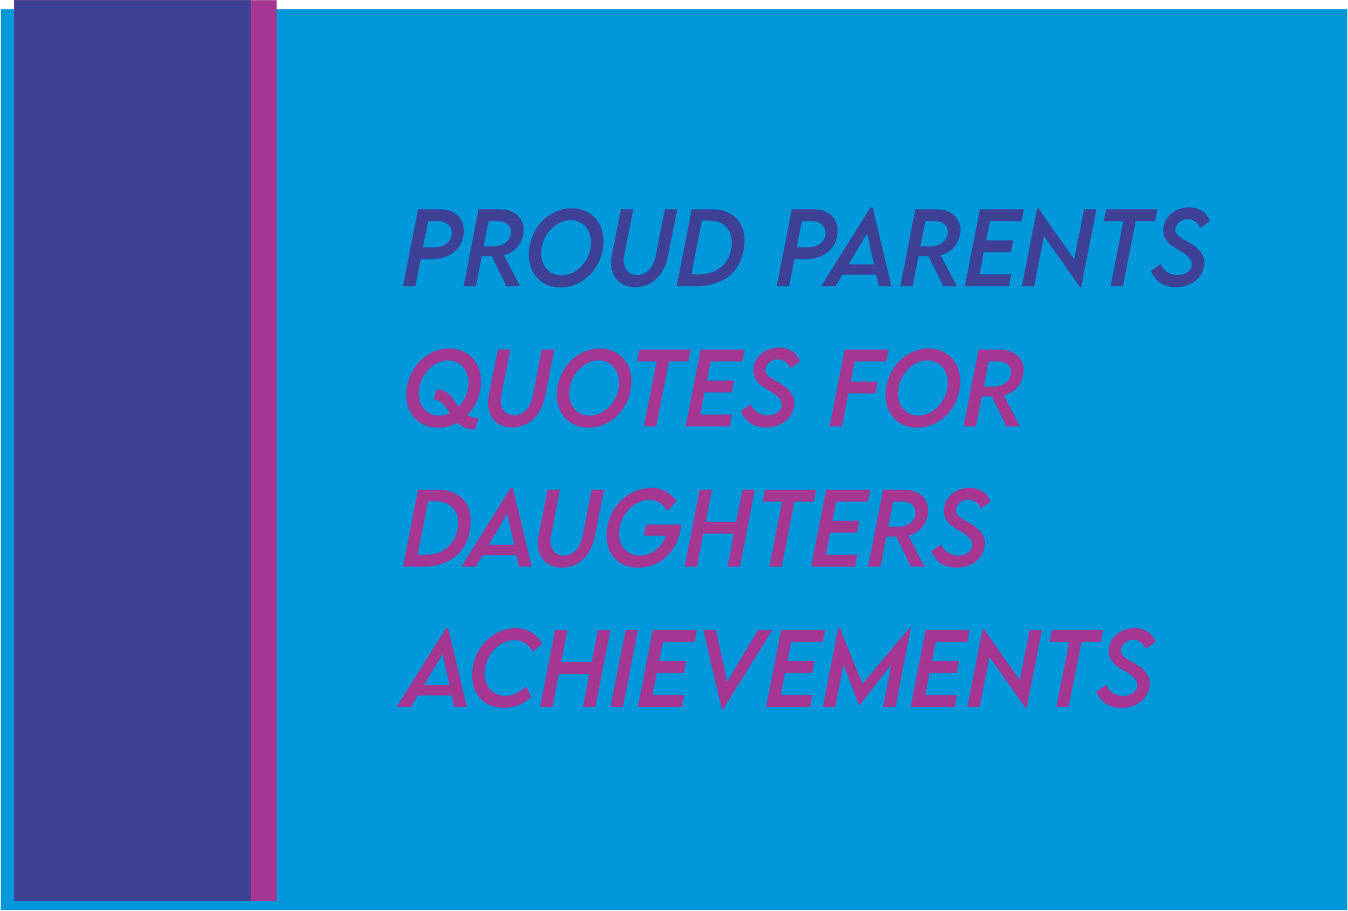 proud parents quotes for daughters achievements